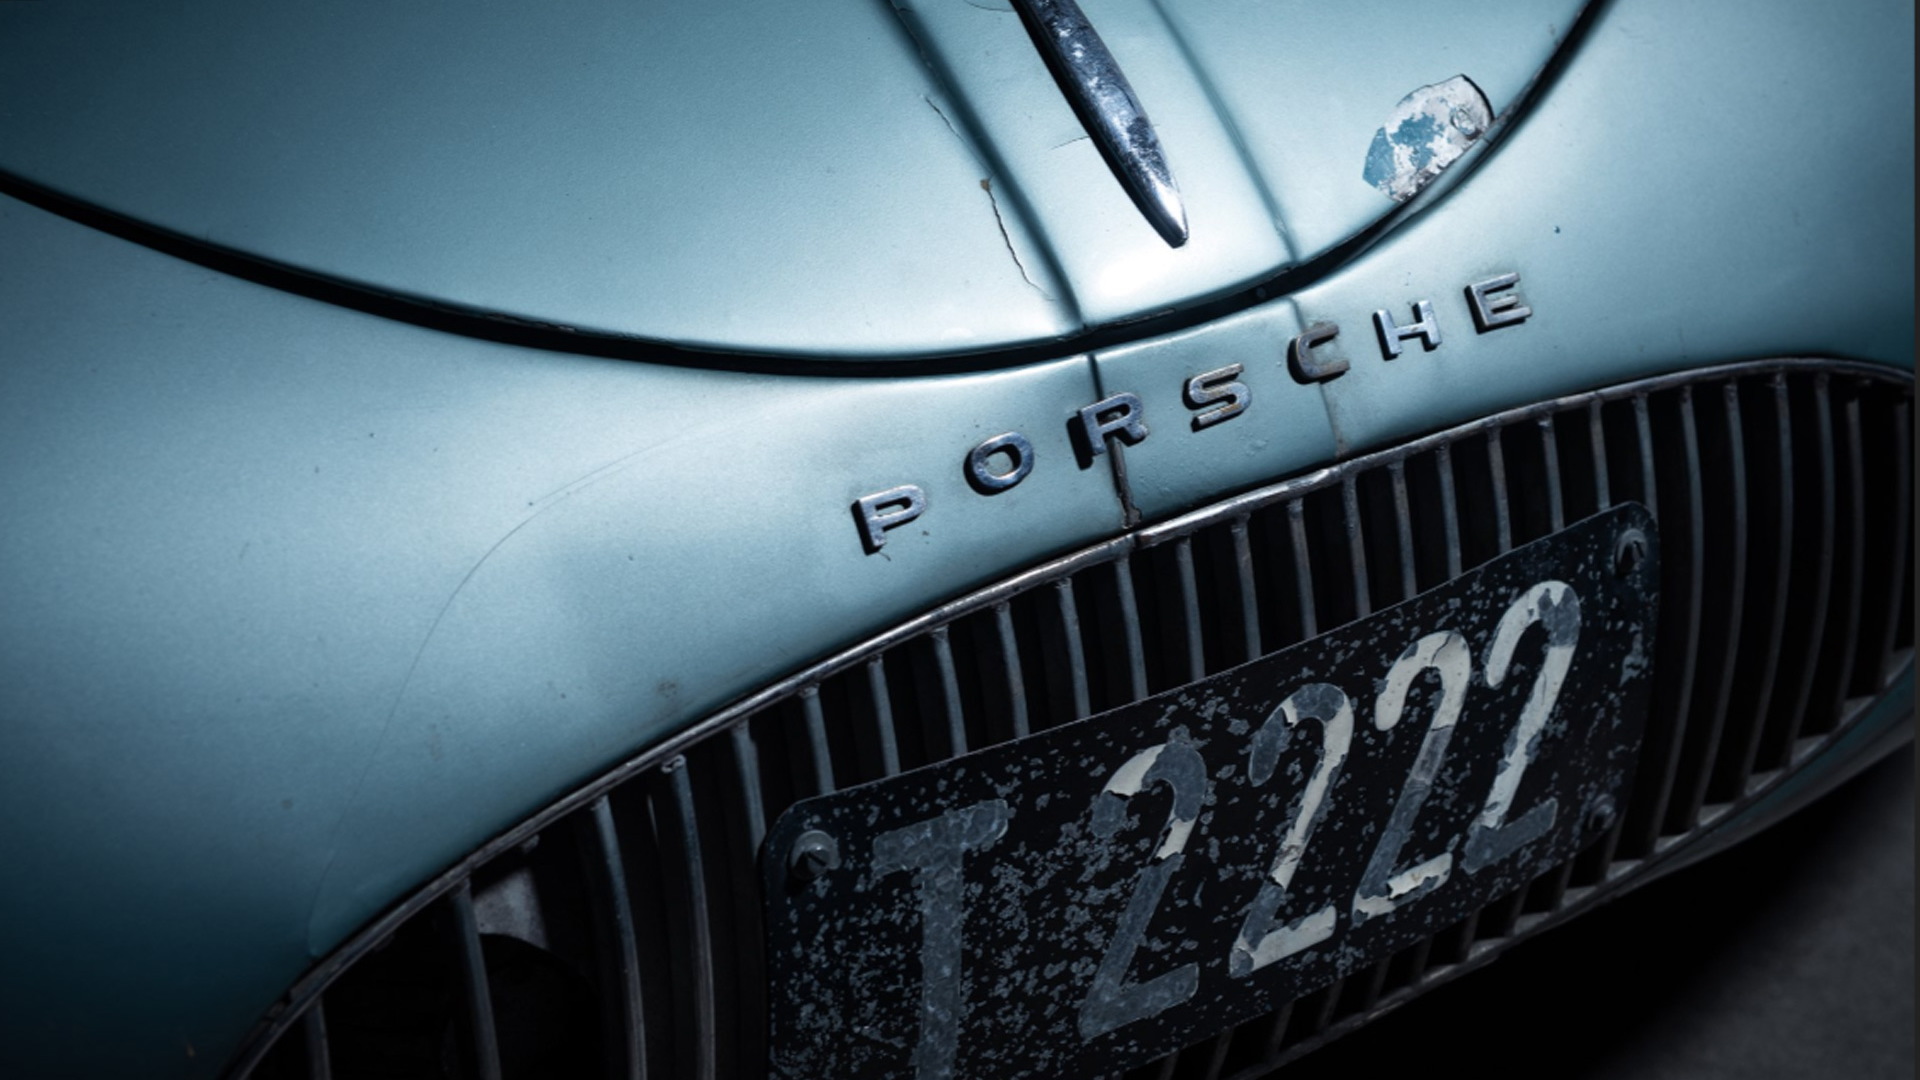 1939 Porsche Type 64 - Image via RM Sotheby's